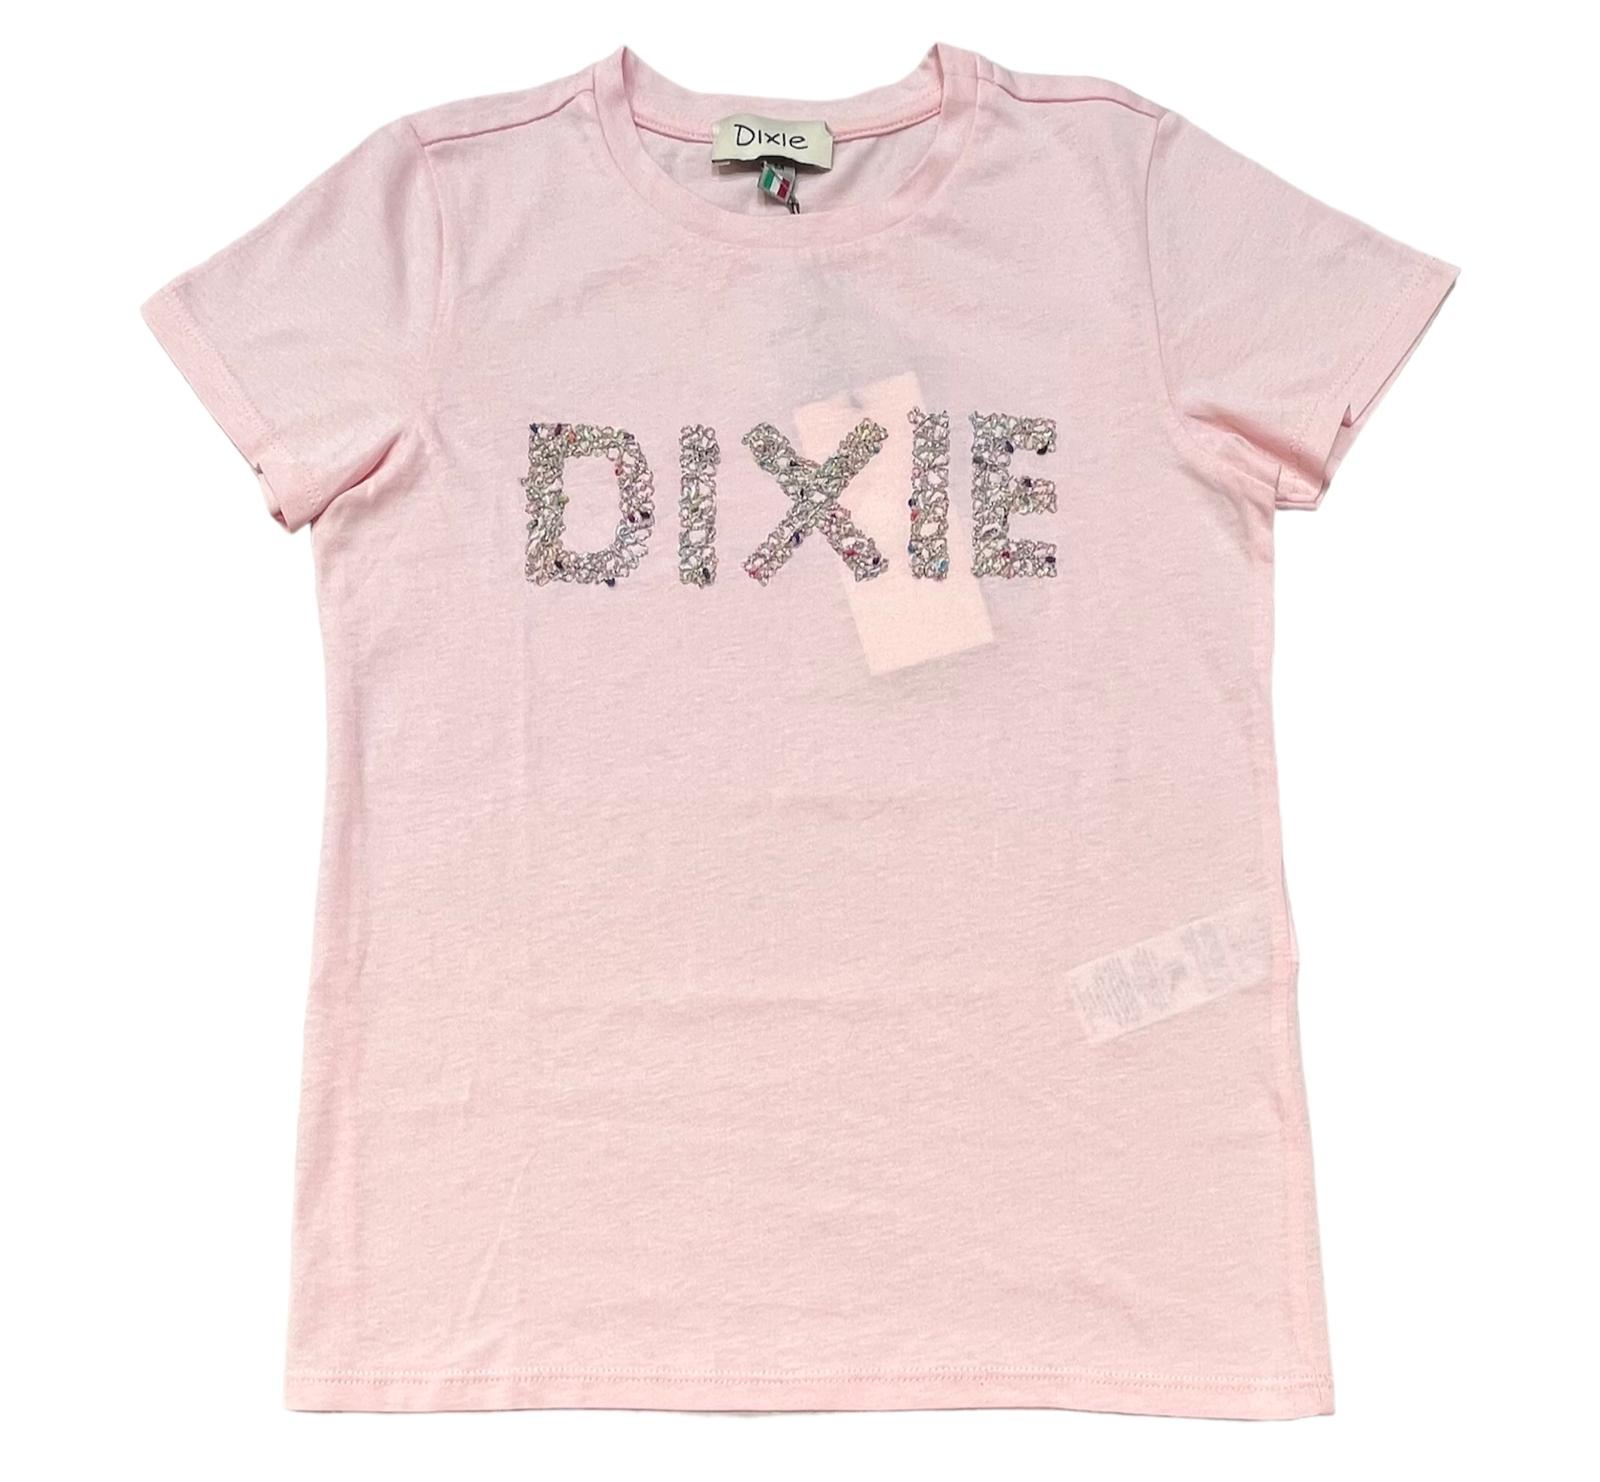 Dixie T-shirt